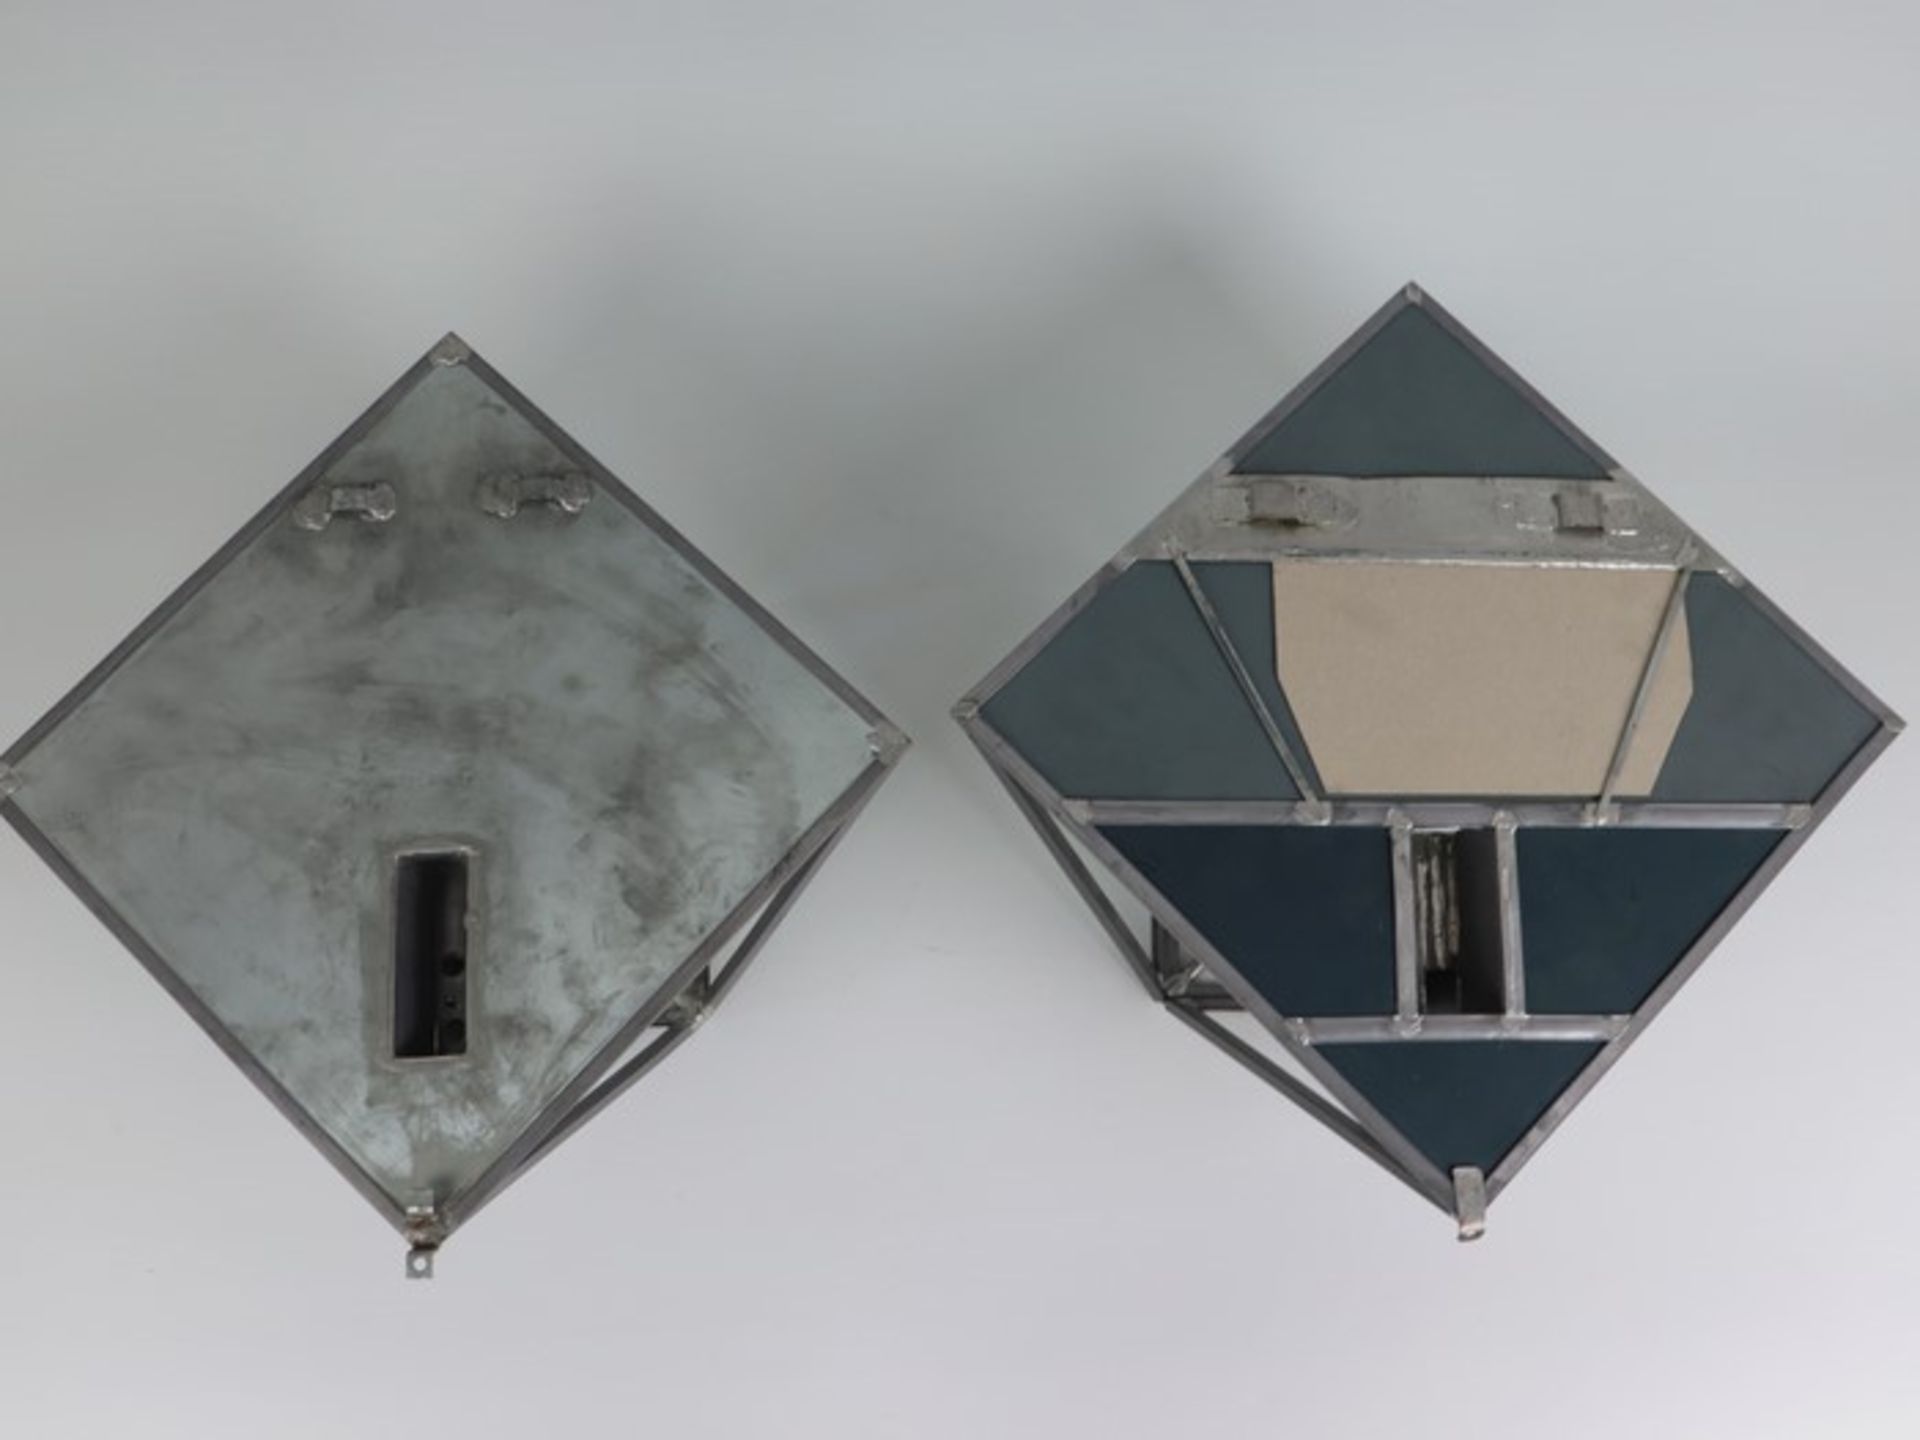 Wandlampen - PendantMetall/Glas, einflammig, Bleiverglasung, Blaseneinschlüsse, quadratisches - Image 4 of 4